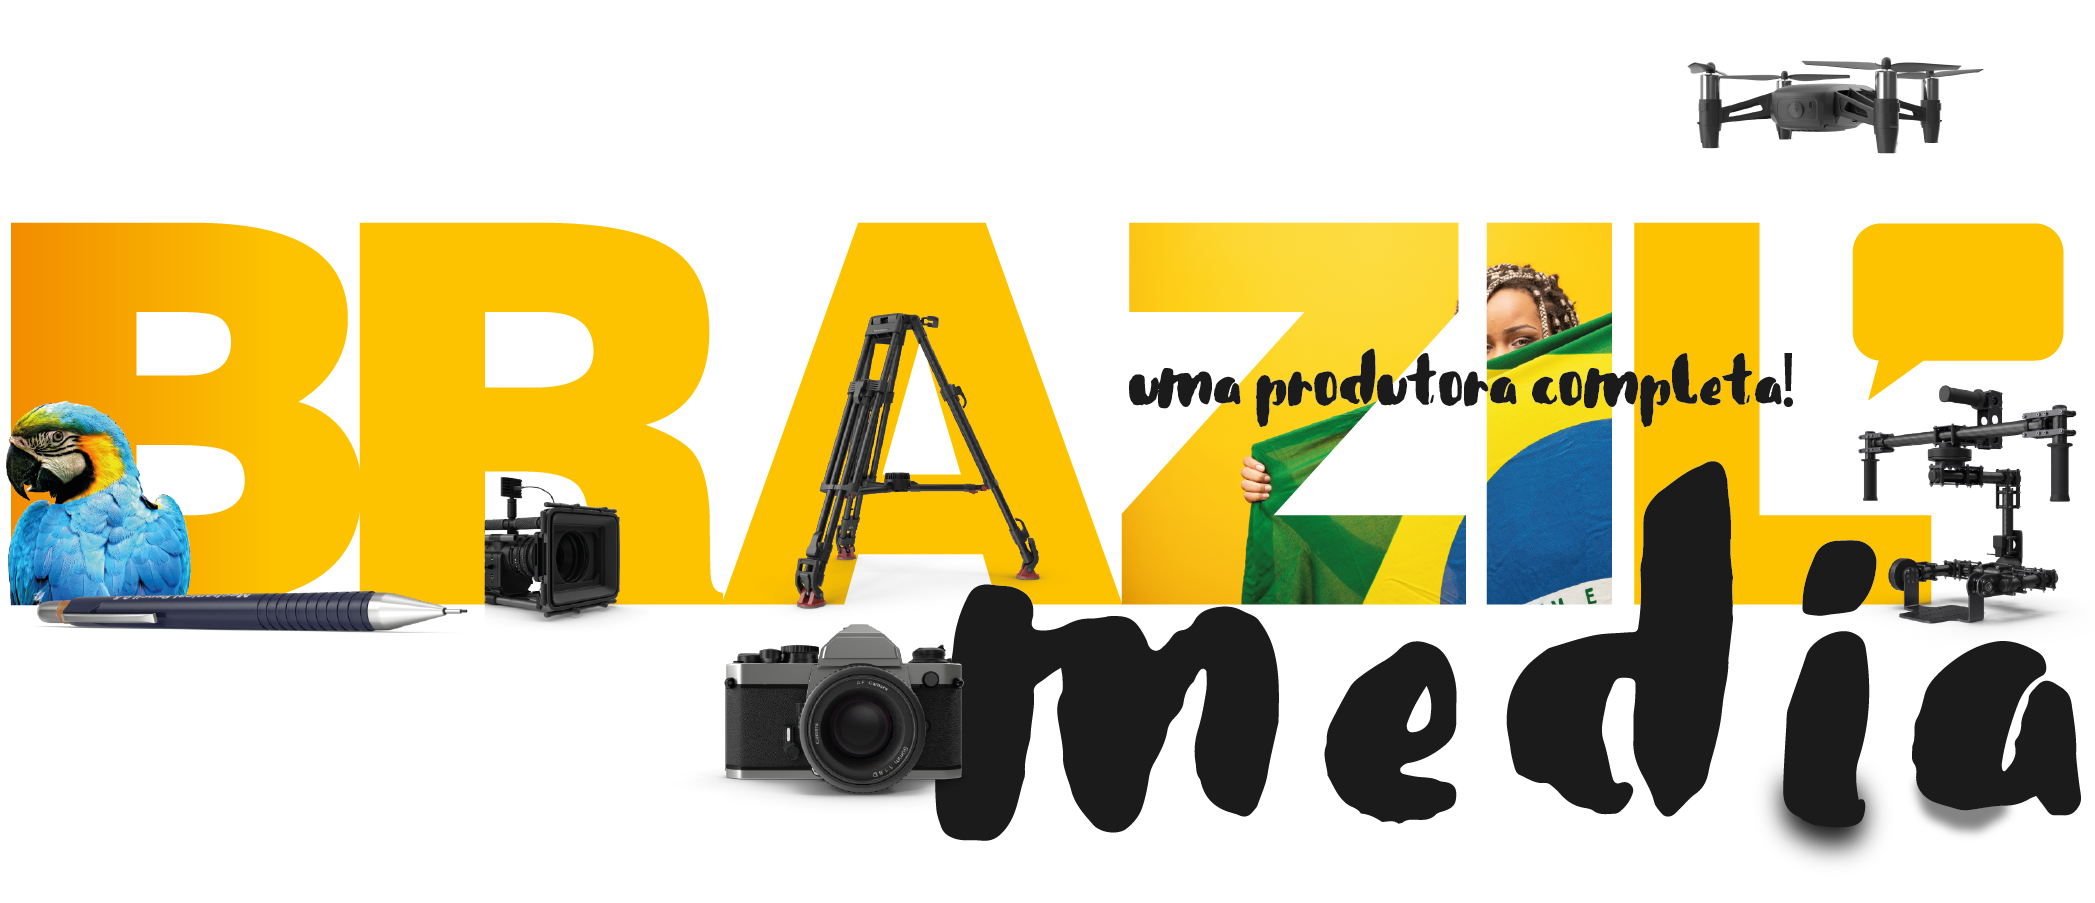 brazil media home